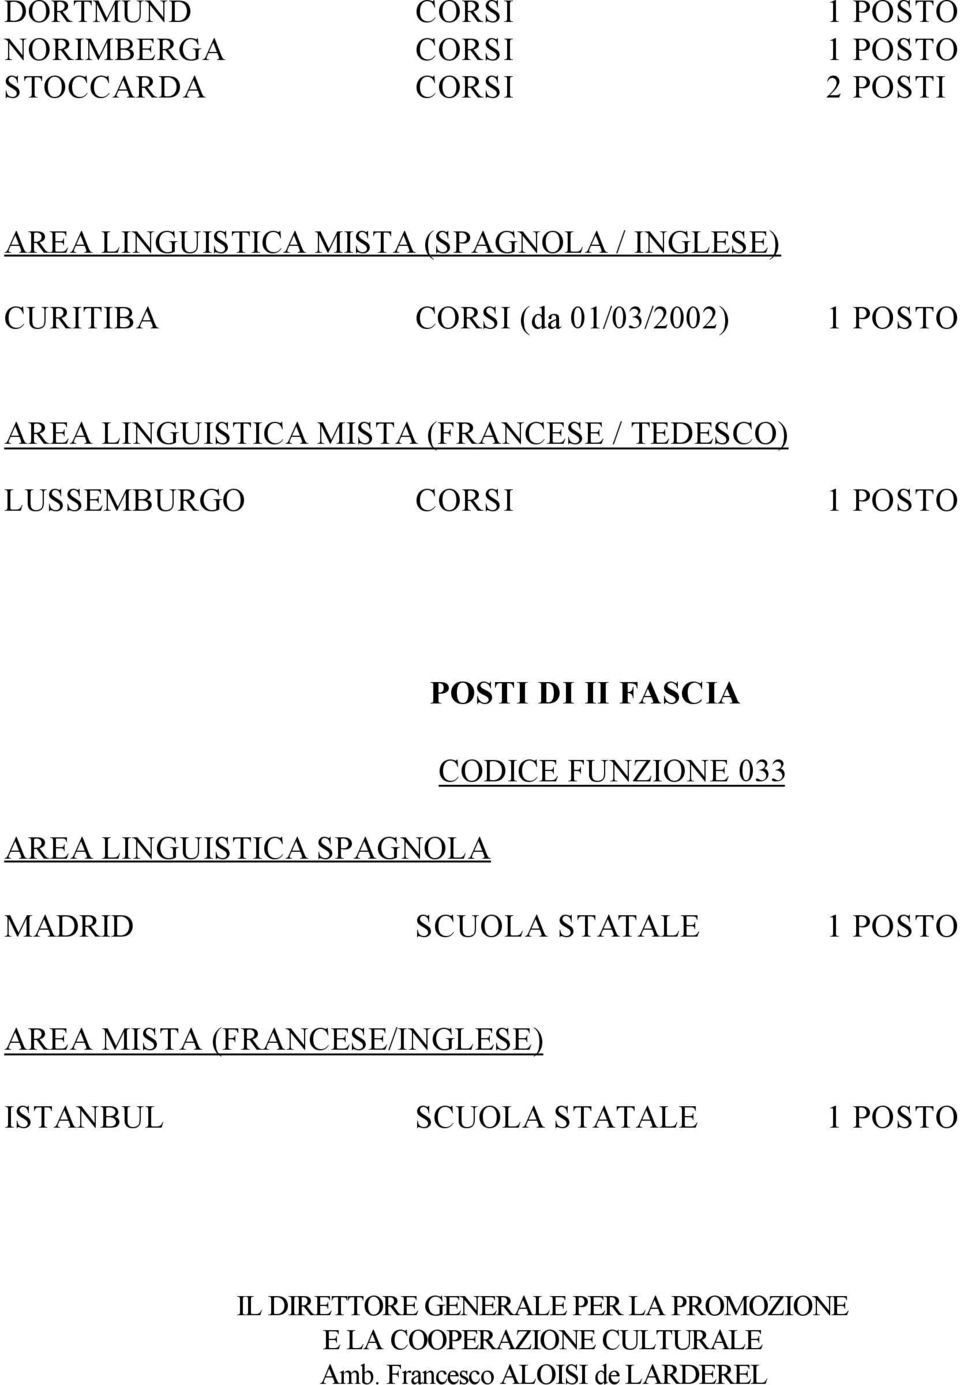 POSTO POSTI DI II FASCIA CODICE FUNZIONE 033 MADRID SCUOLA STATALE 1 POSTO AREA MISTA (FRANCESE/INGLESE) ISTANBUL